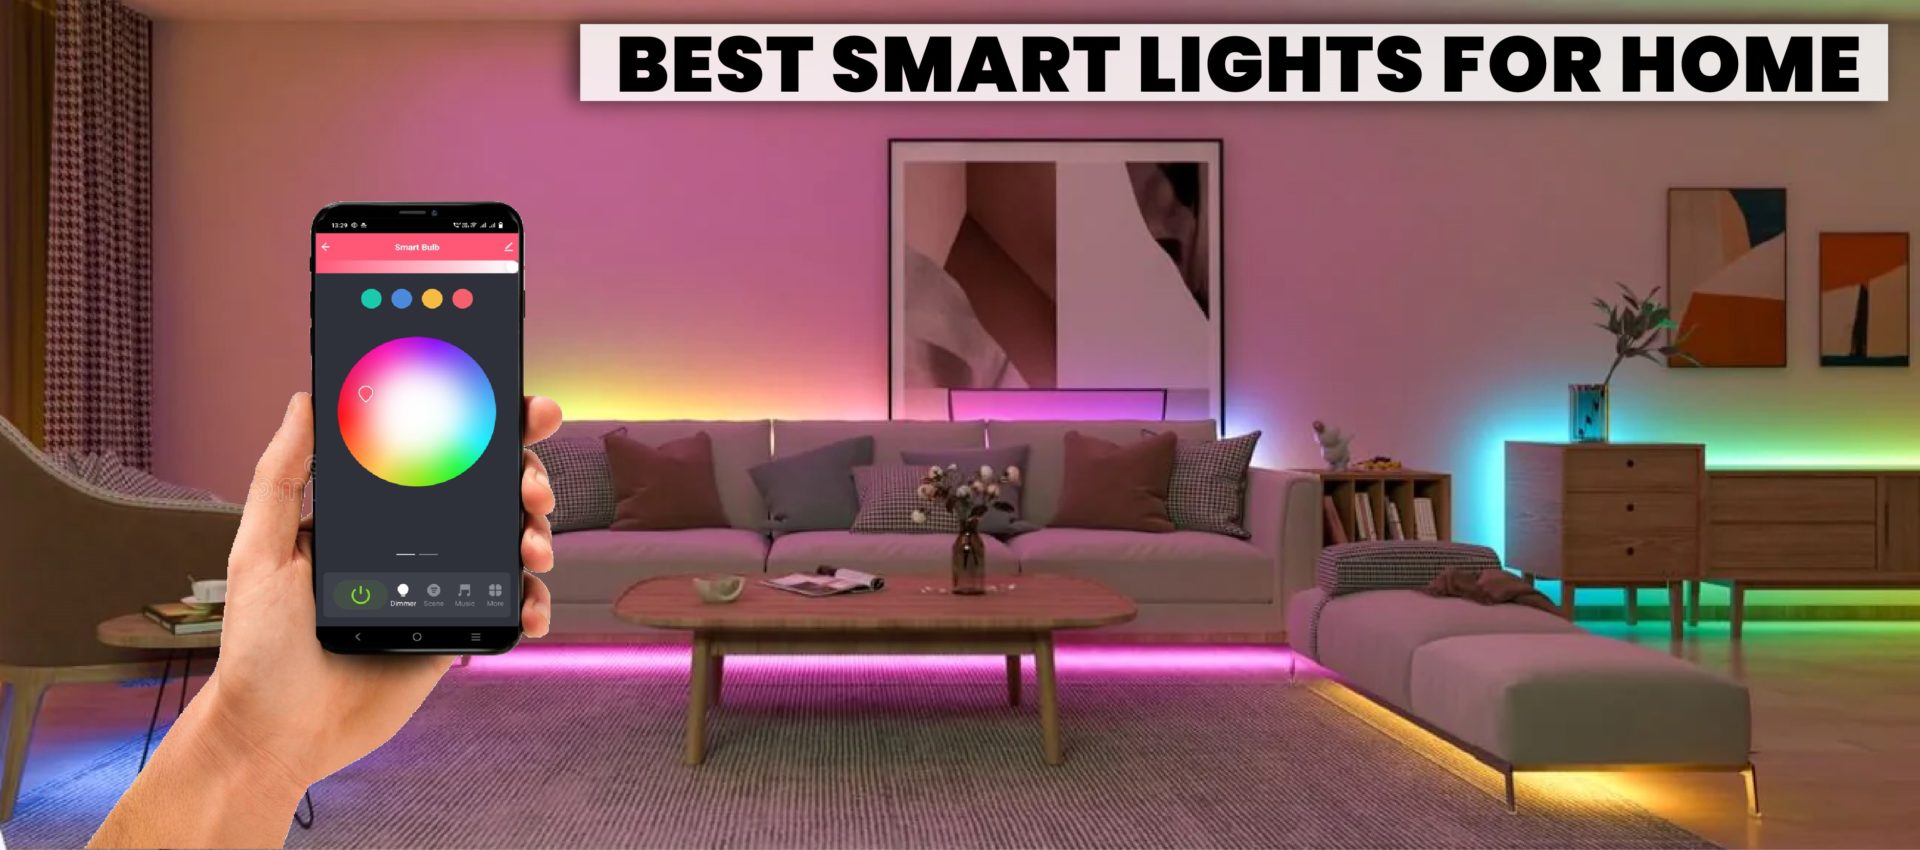 Best smart lights for home